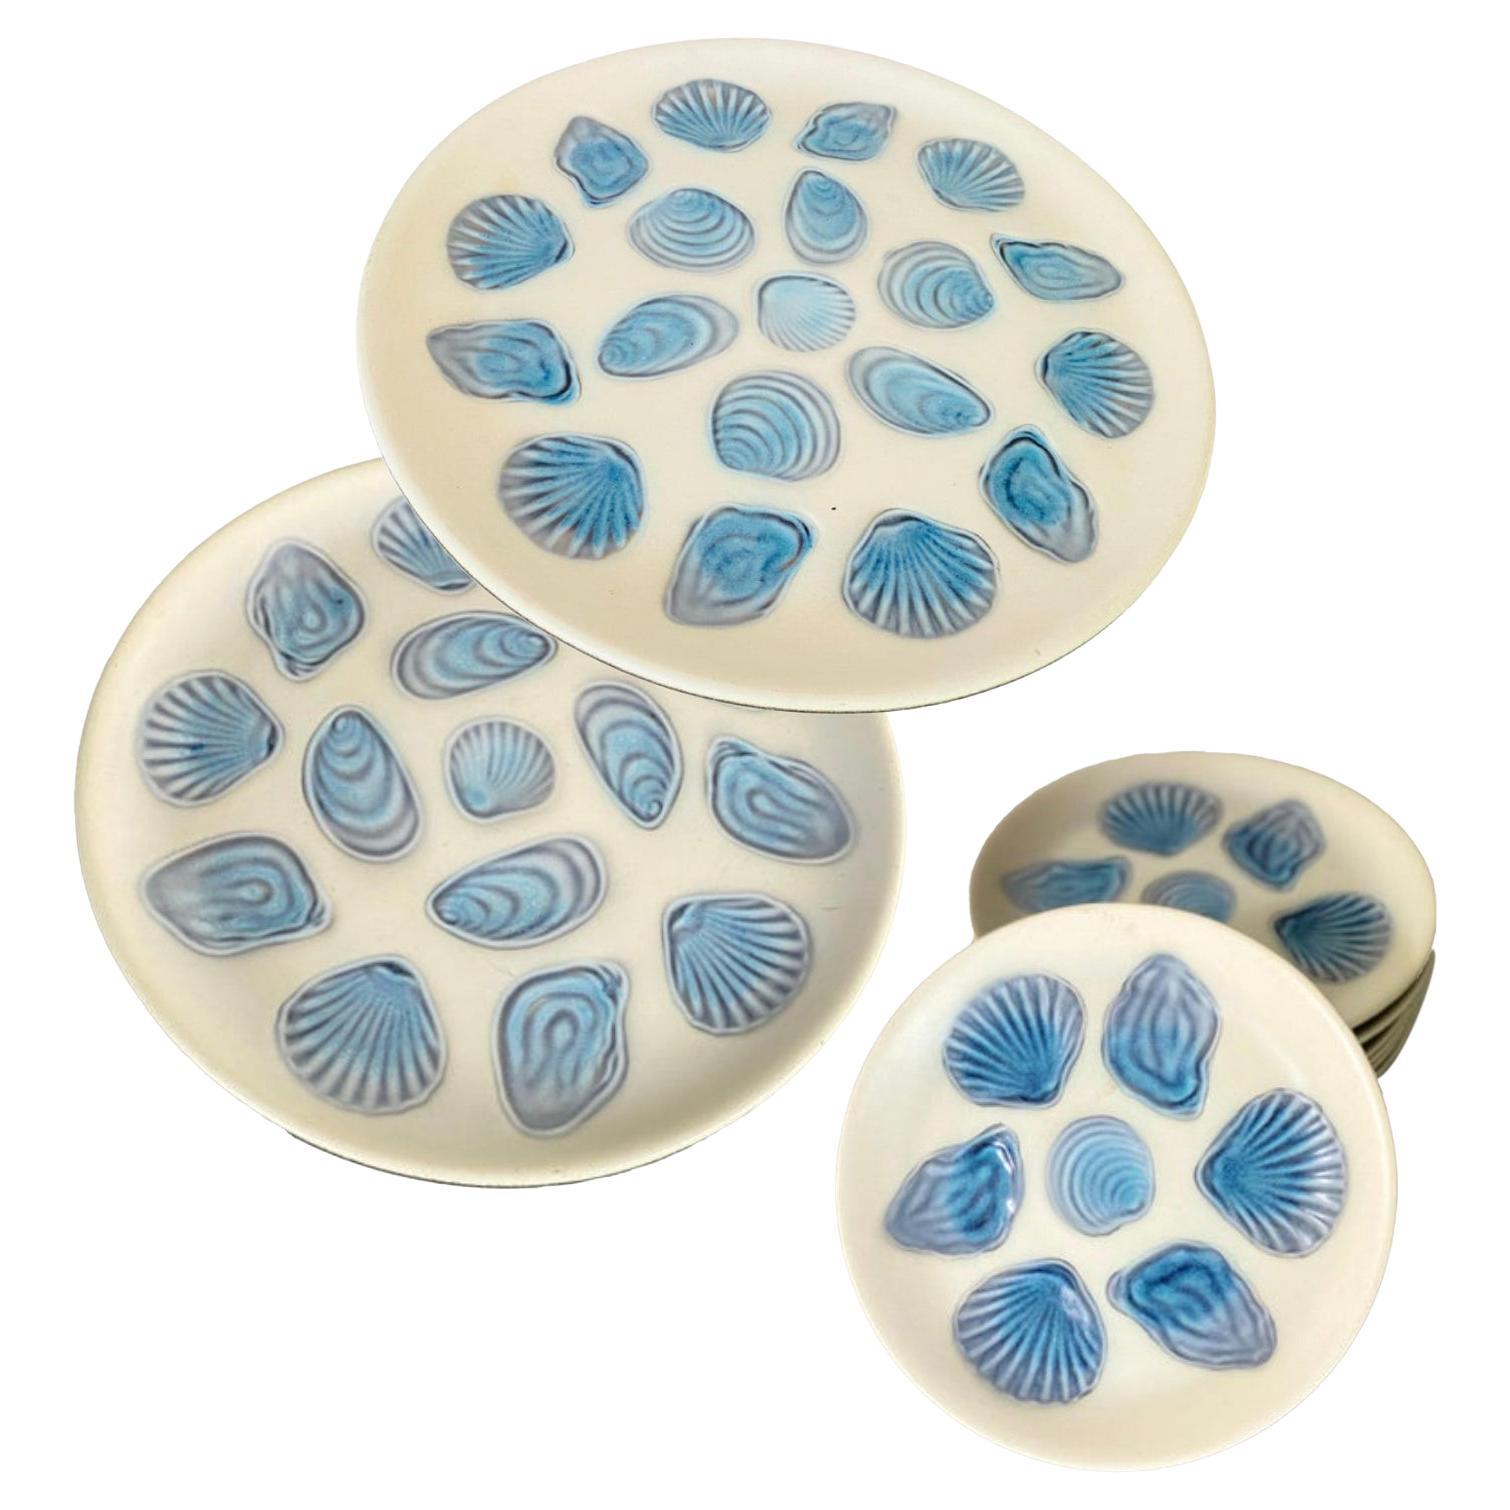 2 große Austernteller und 6 Teller aus Keramik in Blau und Weiß in Frankreich von Elchinger